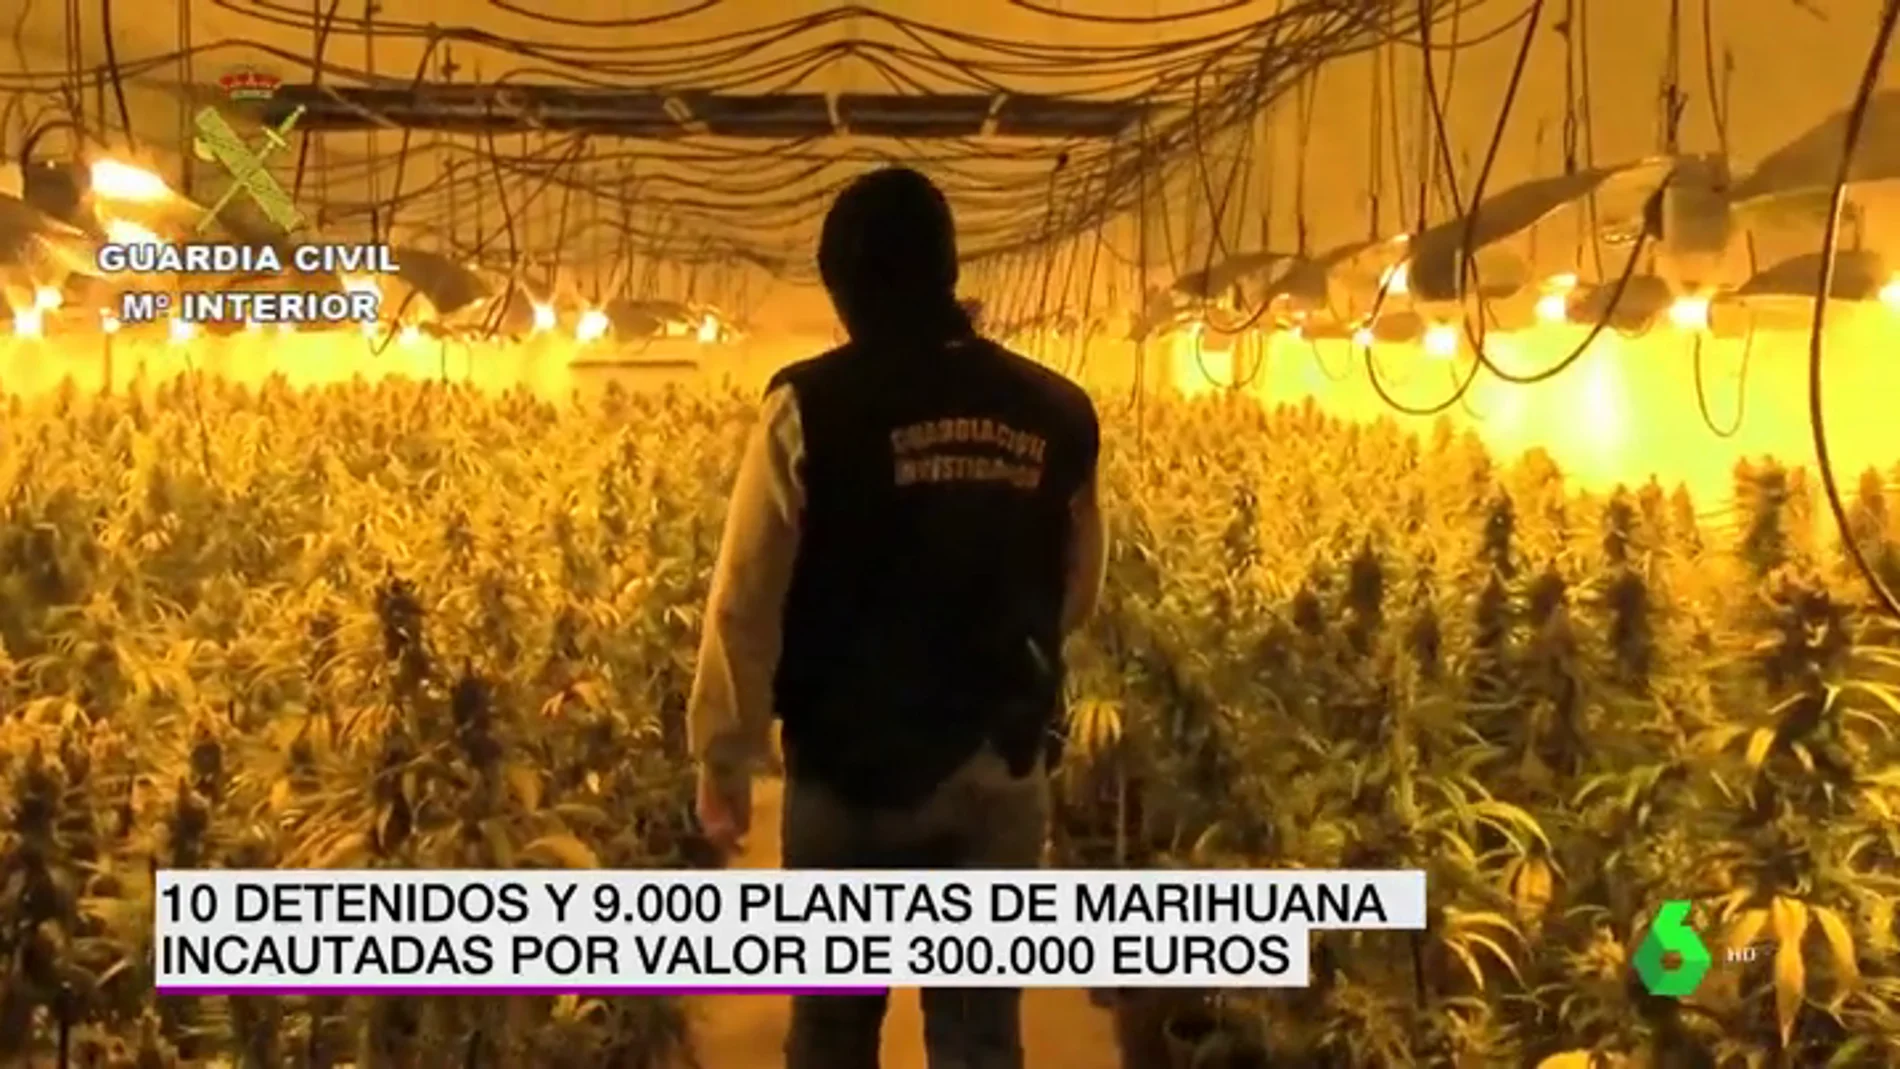 La Guardia Civil incauta 9.000 plantas de marihuana por valor de 300.000 euros en Toledo y detienen a diez personas